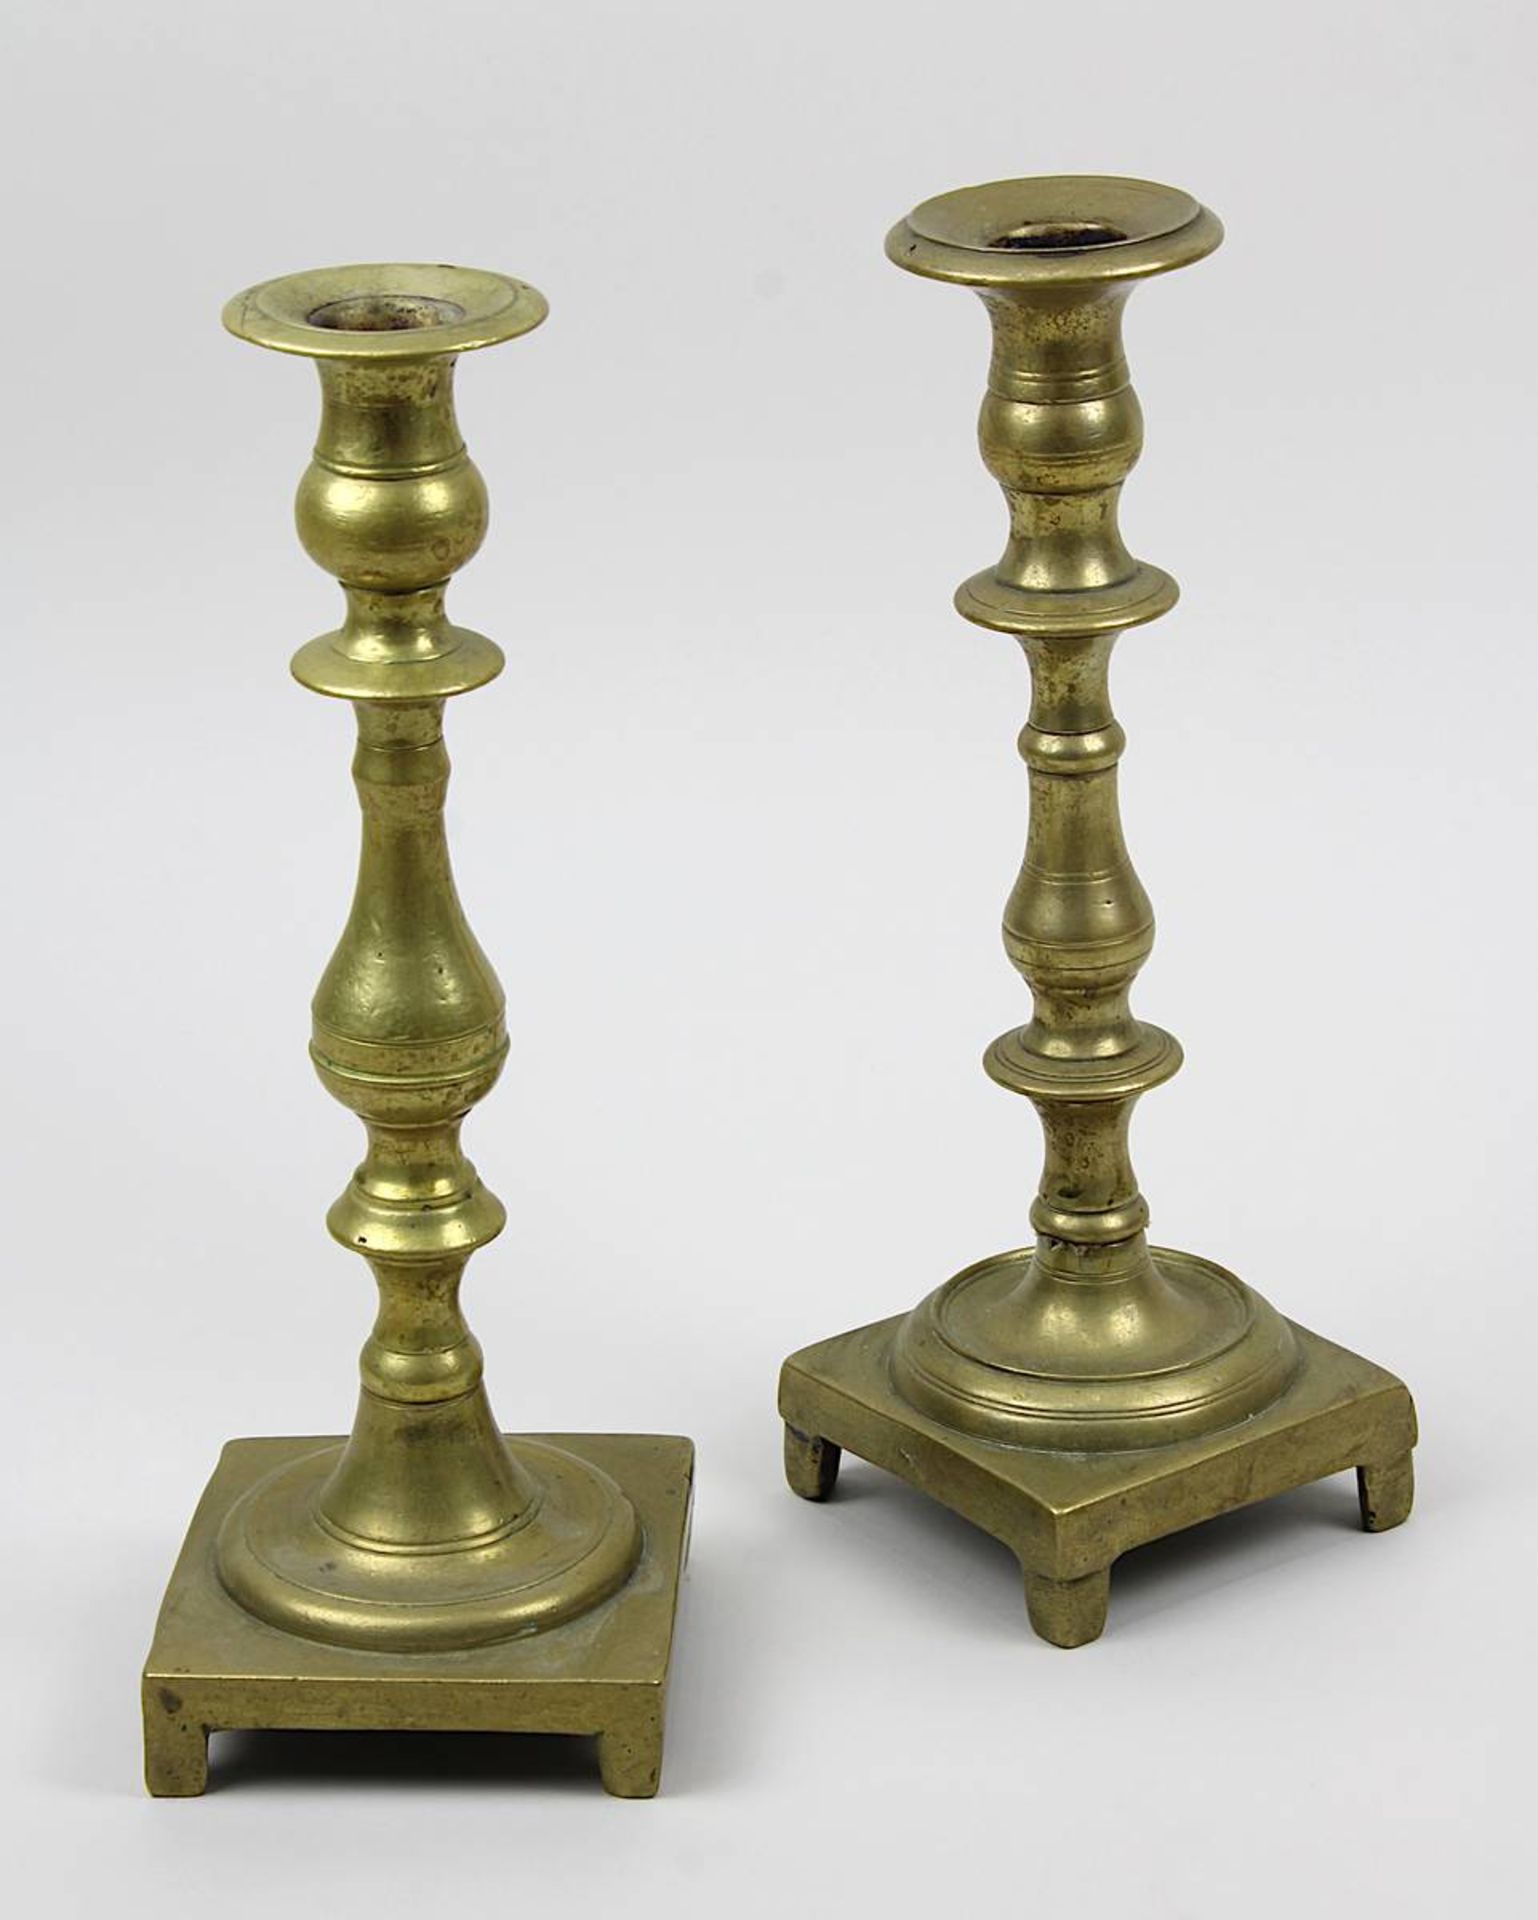 Paar bronzene Tischleuchter, Judaica um 1800, H je 25,5 cm, seit Generationen in jüdischem